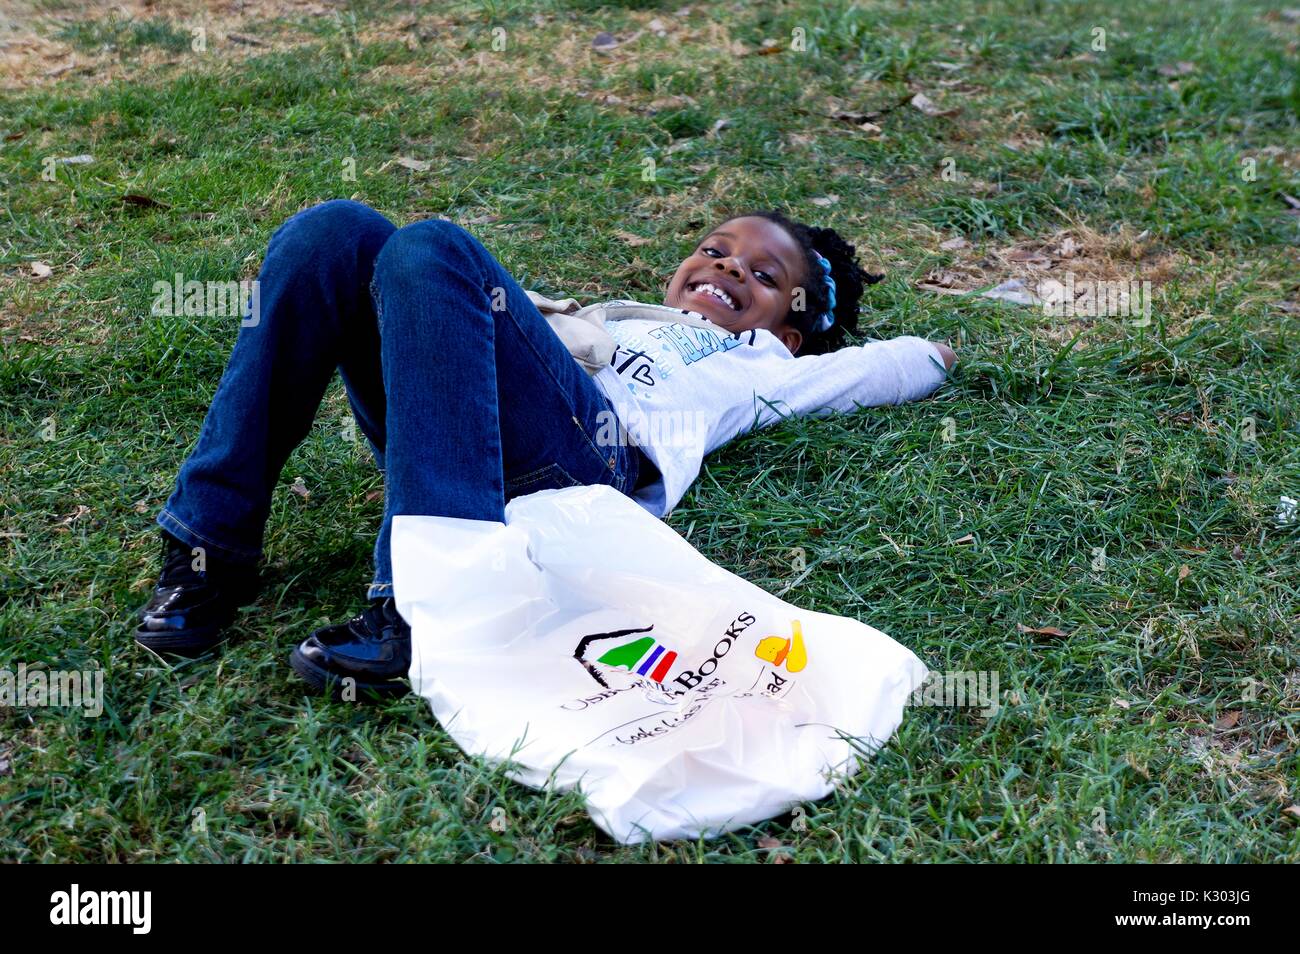 Une jeune fille souriant et portant dans l'herbe avec un sac en plastique au Baltimore Book Festival à Baltimore, Maryland, Septembre, 2013. Banque D'Images